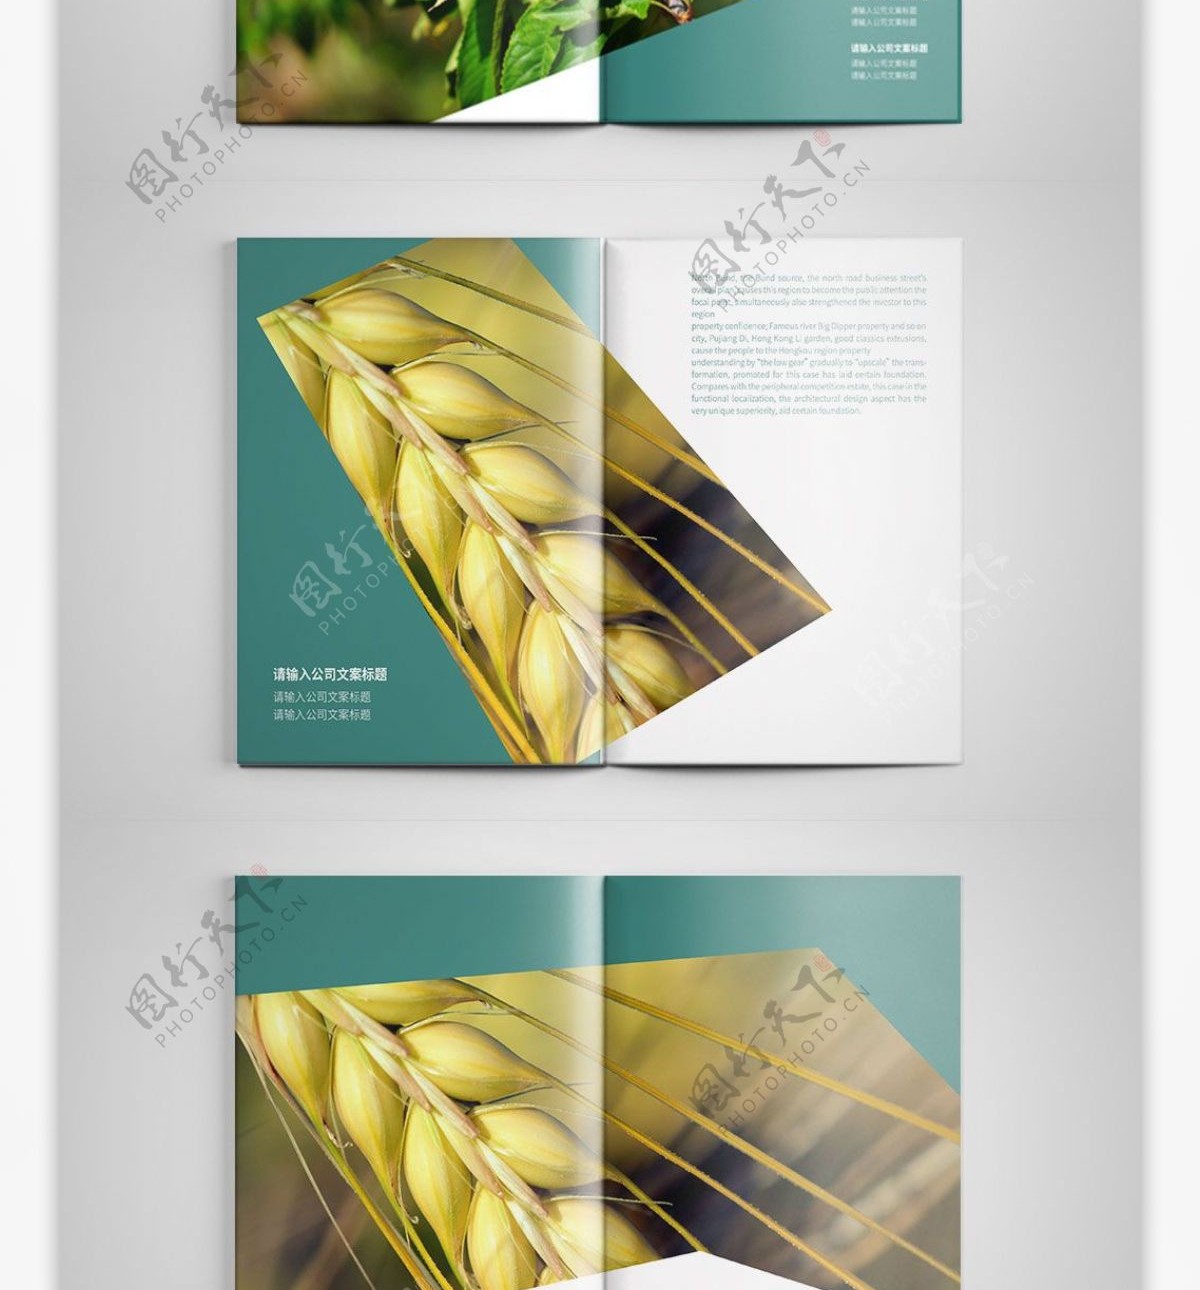 几何创意青色农业宣传画册设计PSD模板